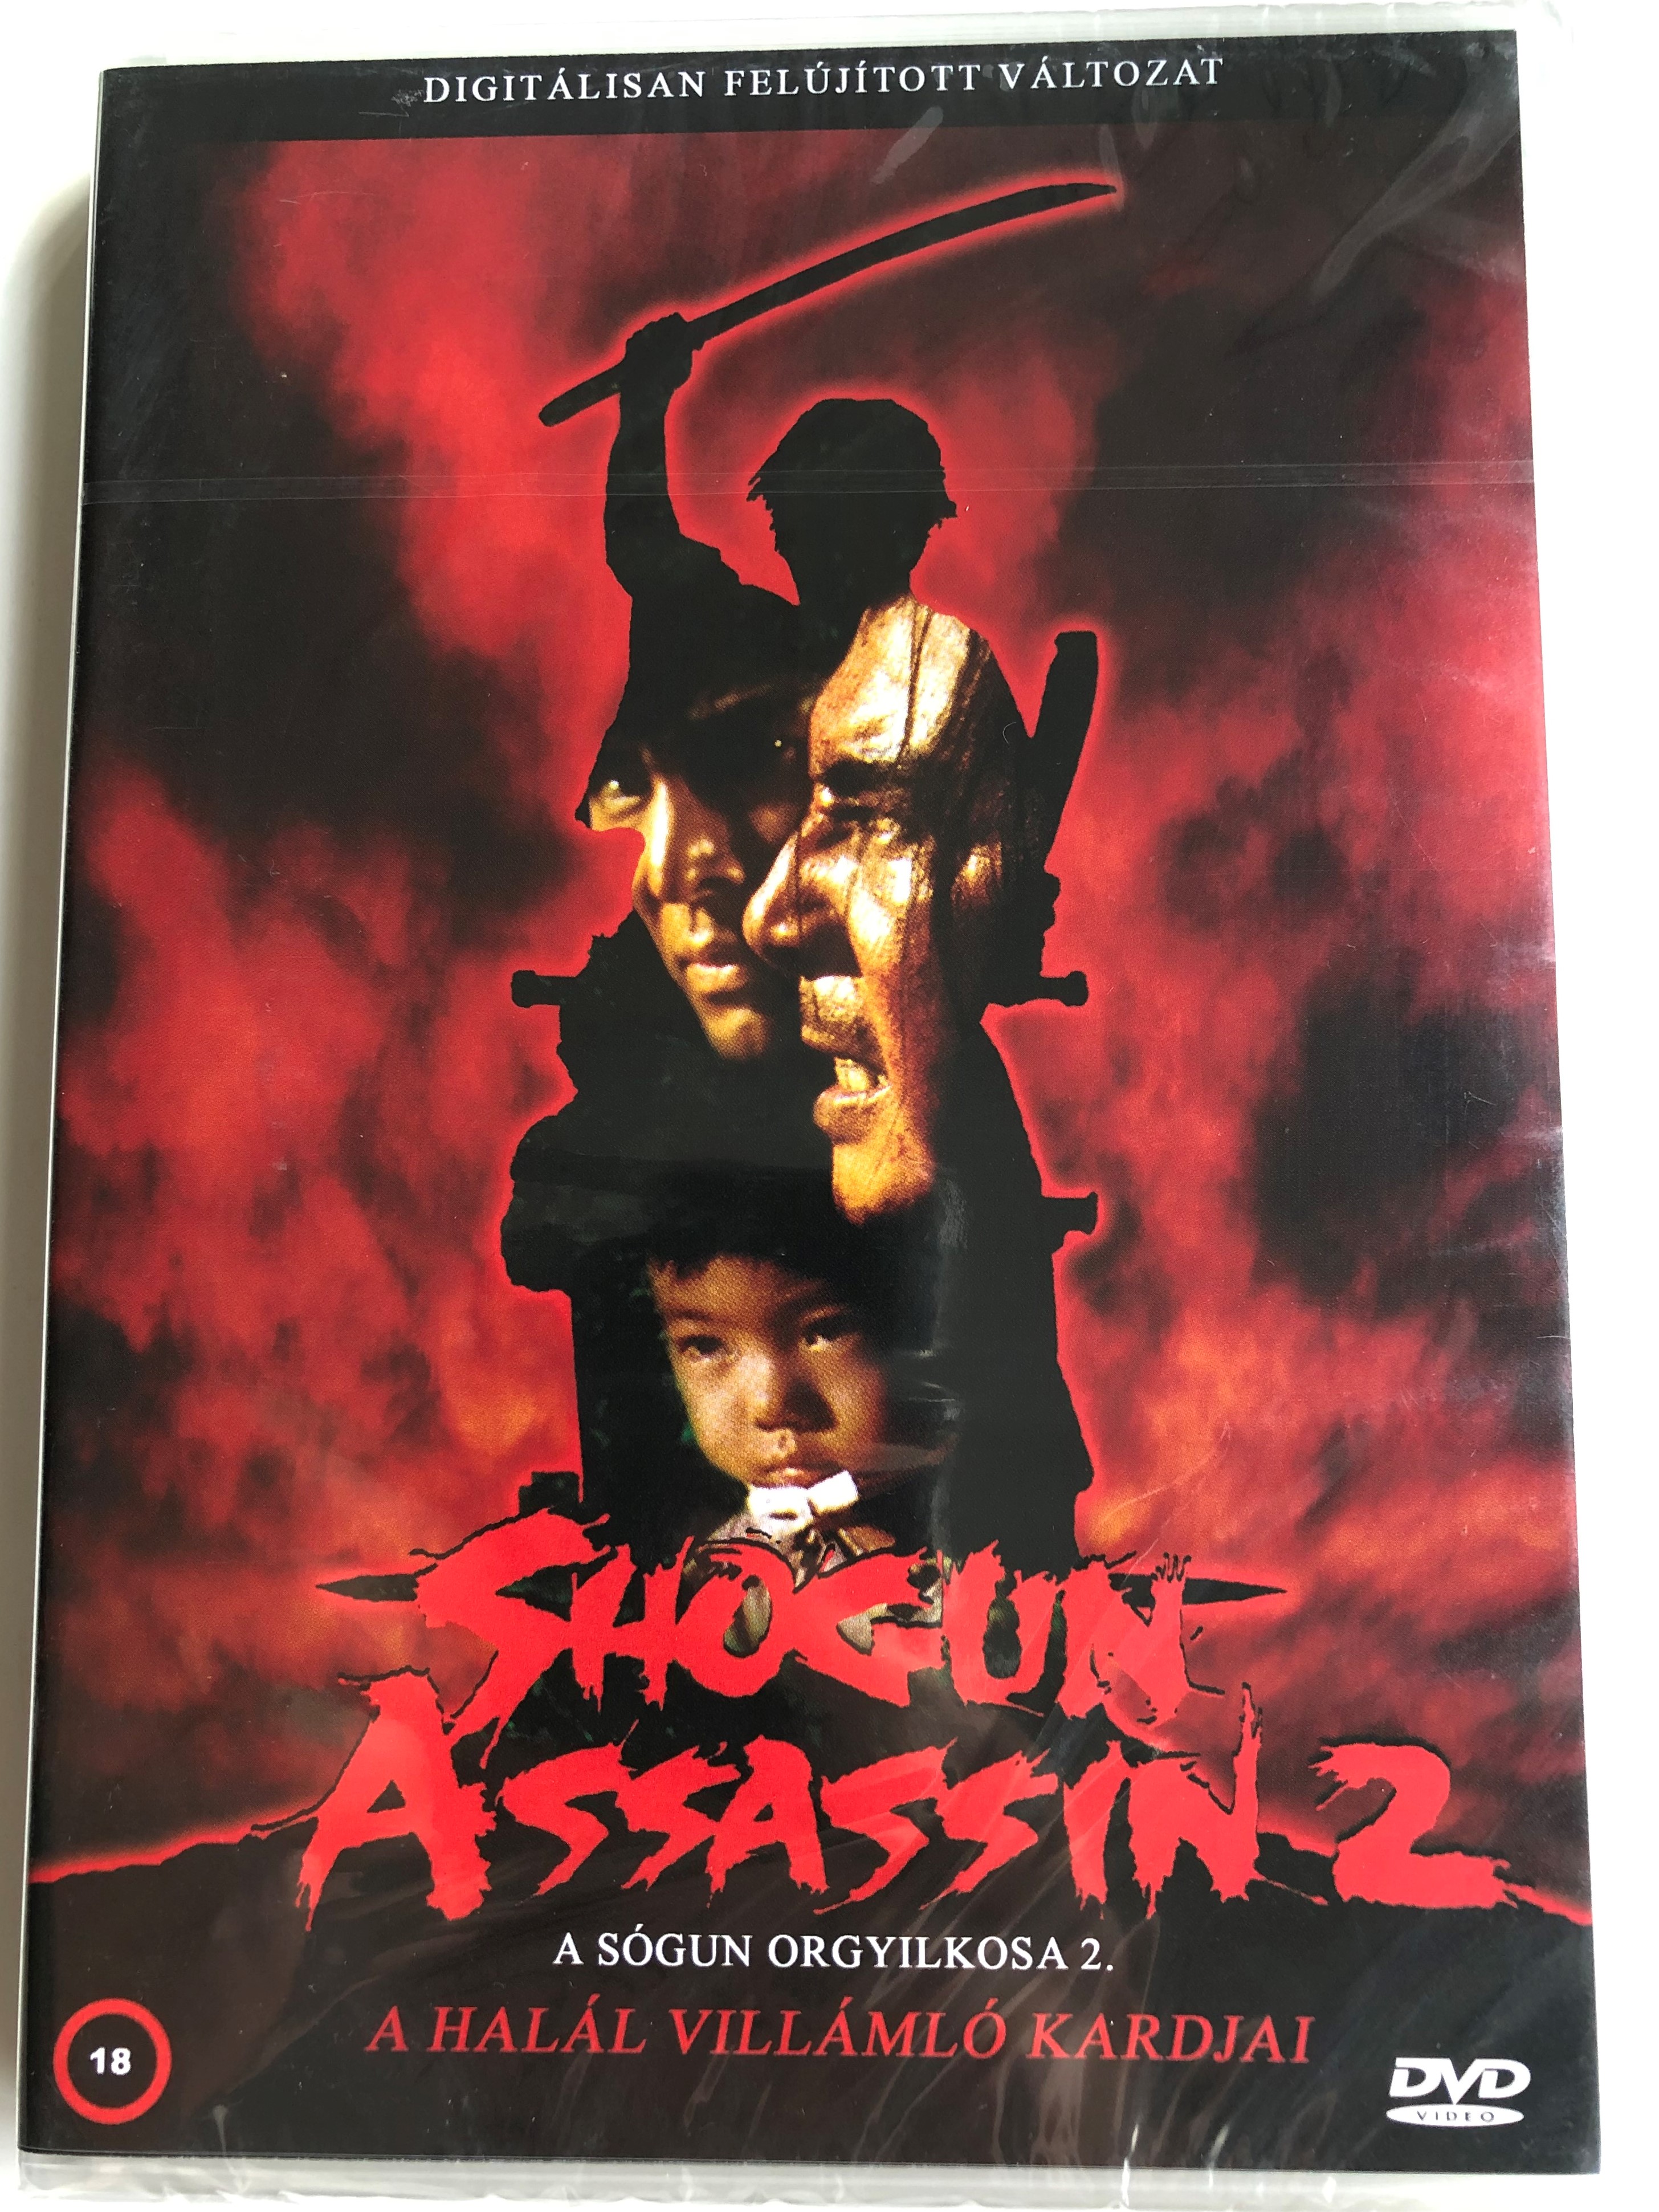 Shogun Assassin 2 DVD 1980 A Sógun orgyilkosa 2 - A halál villámló kardjai  / Directed by Kenji Misumi / Starring: Tomisaburo Wakayama, Kayo Mautso,  Akiji Kobayashi - bibleinmylanguage